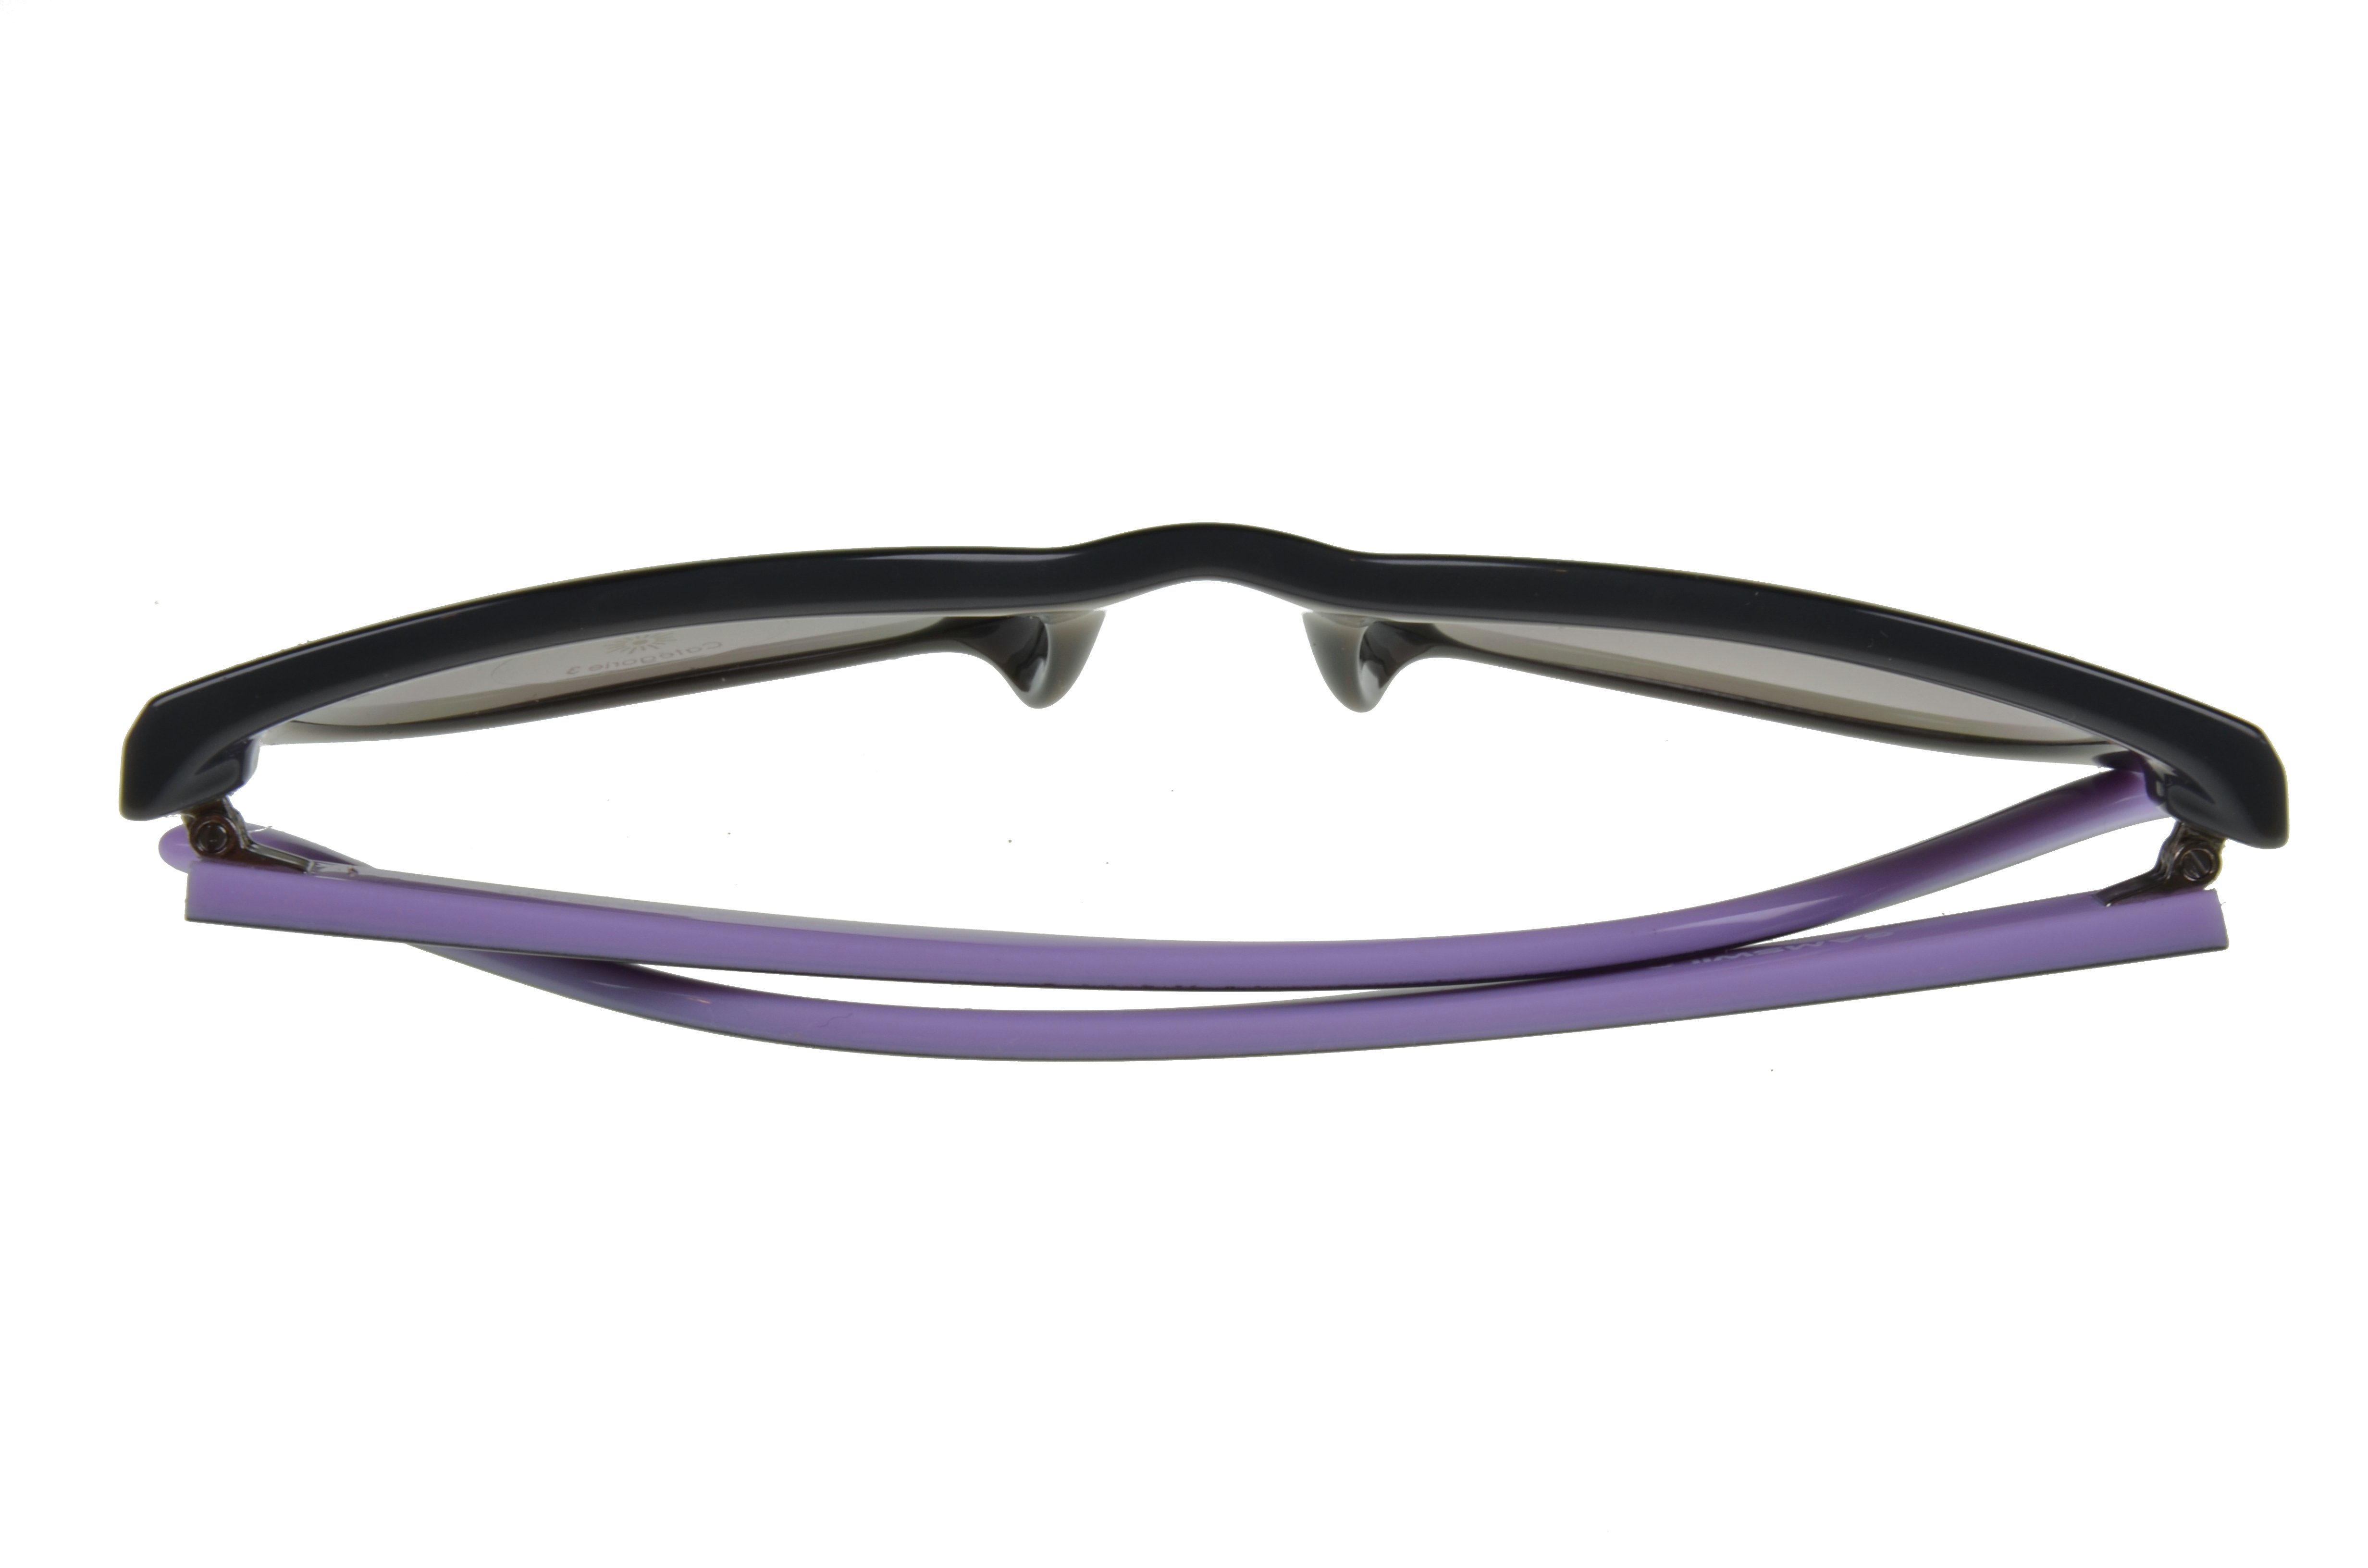 WM7027 GAMSSTYLE schwarz Brille Mode lila, Damen lila Sonnenbrille schwarz beige, - Gamswild Cat-Eye - Herren Unisex /